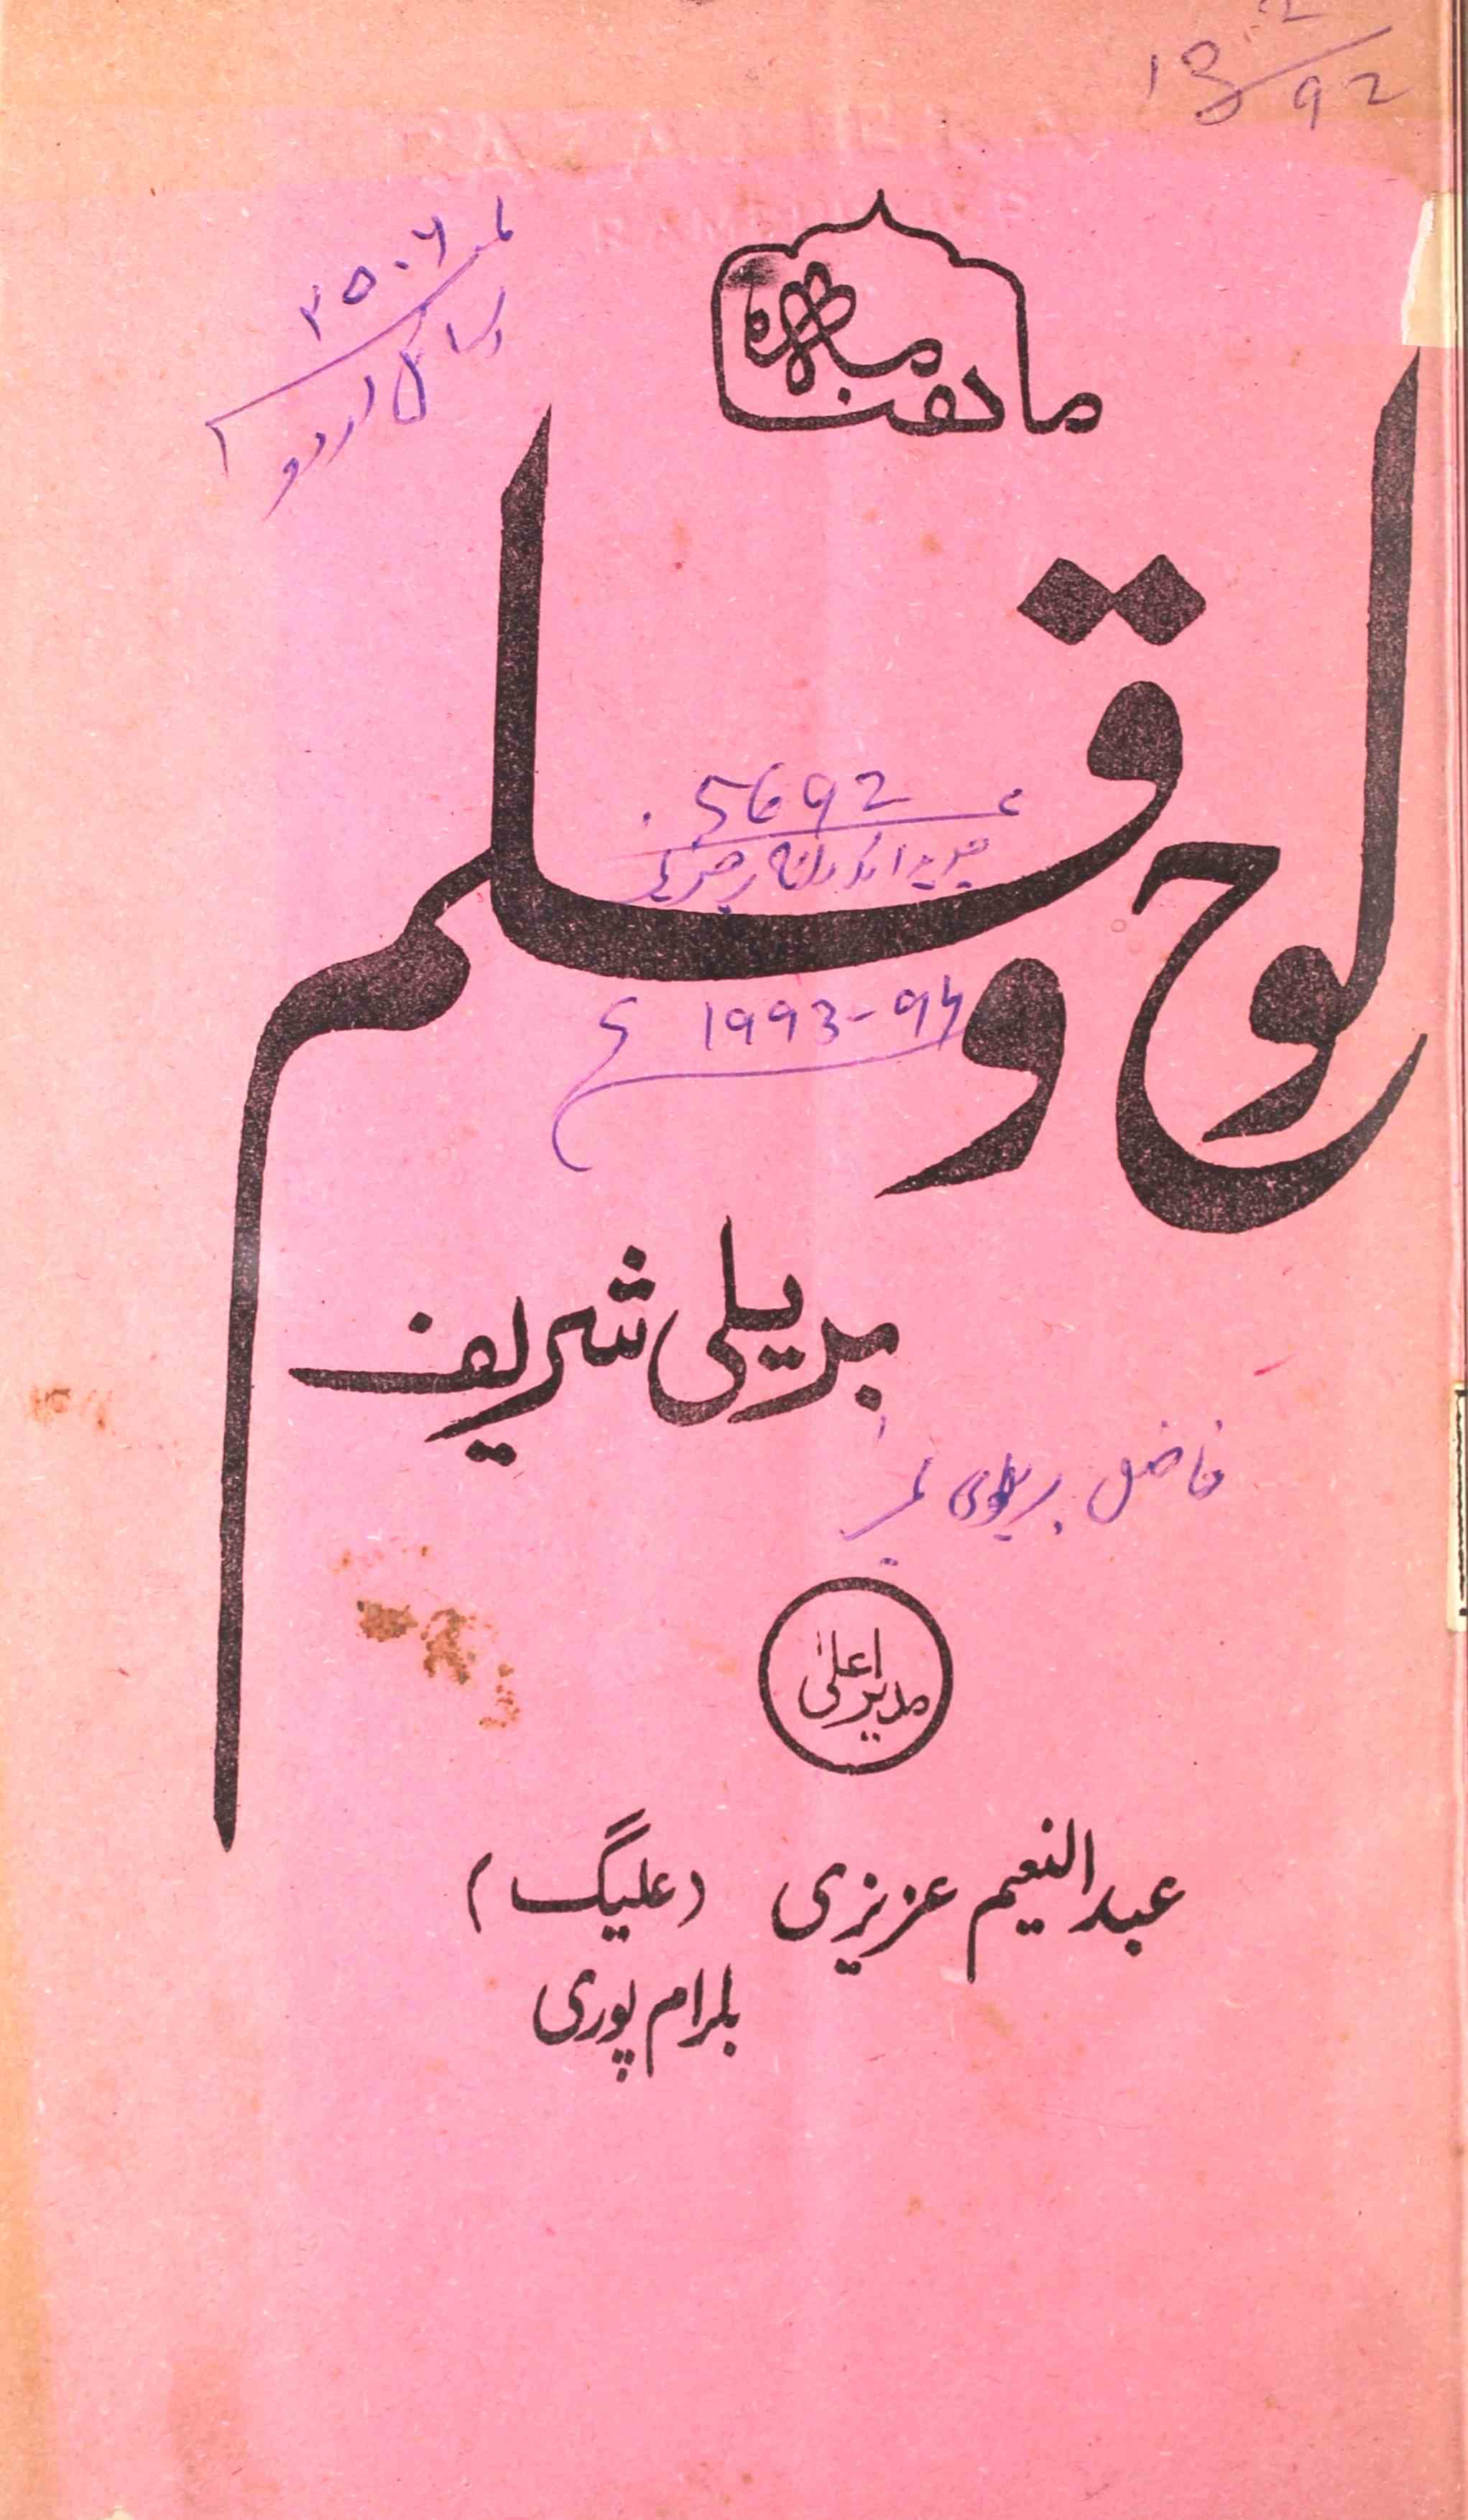 لوح و قلم- Magazine by الرضا اسلامک اکیڈمی، بریلی شریف, دارالطباعت سلامتی پرنٹنگ پریس، گلبرگہ 